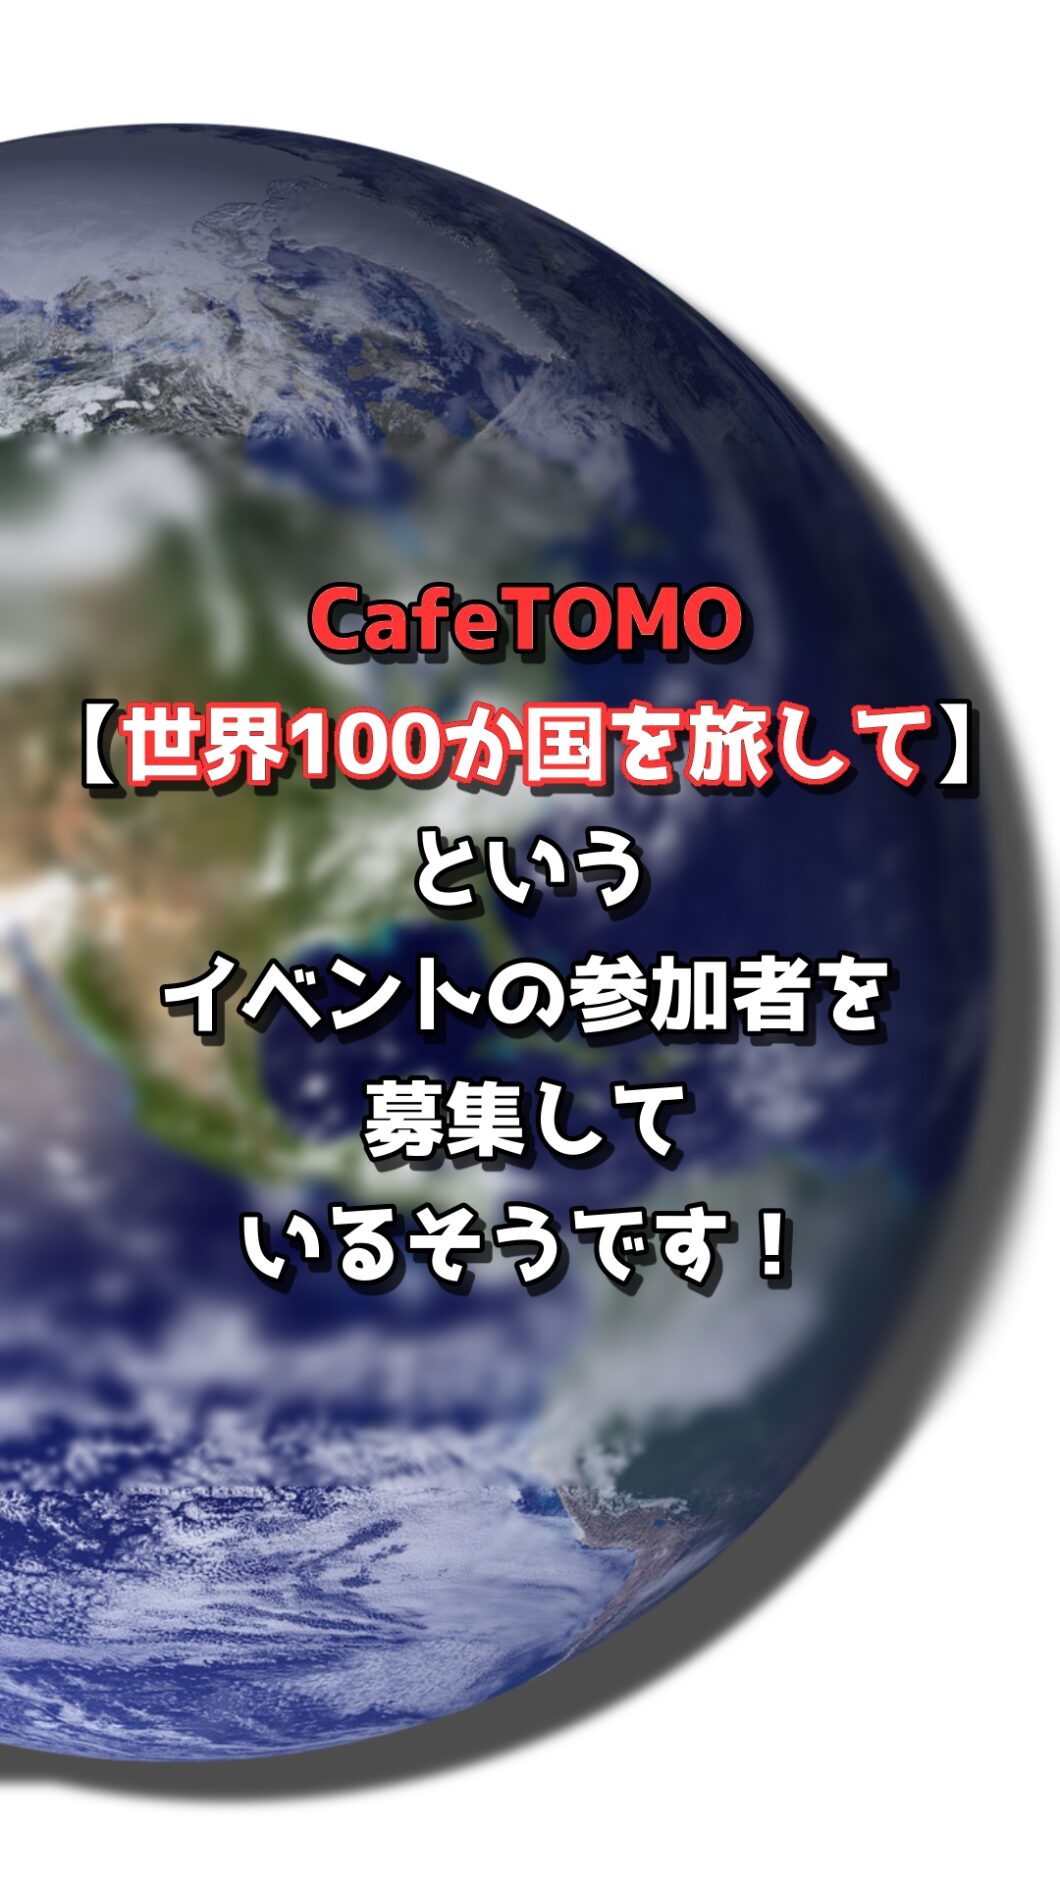 CafeTOMO【世界100か国を旅して】というイベントの参加者を募集しているそうです！